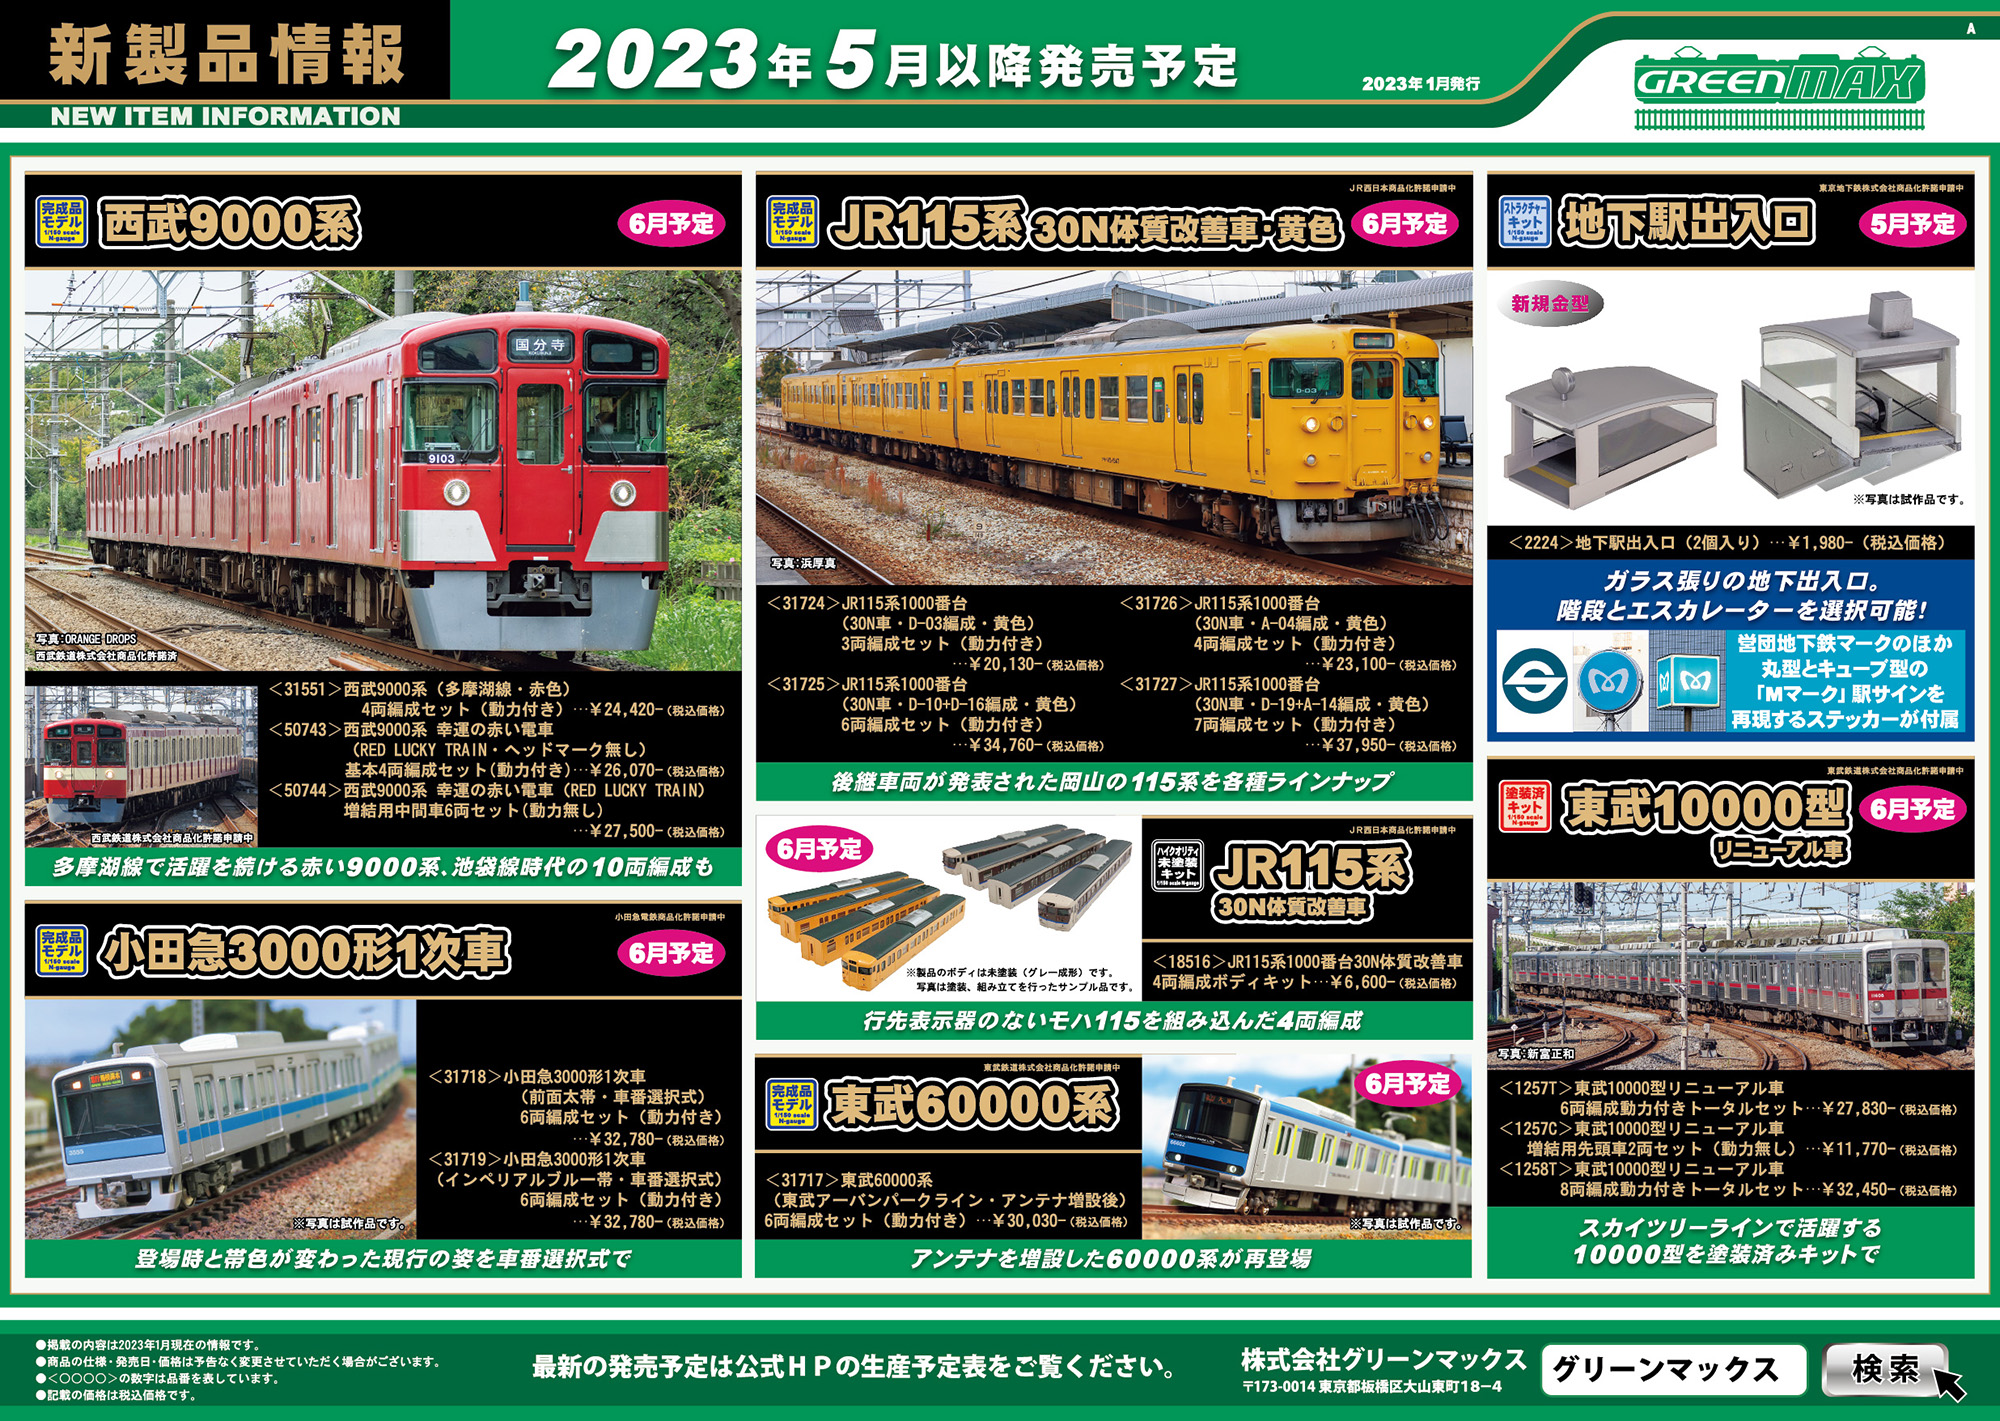 2023年1月23日発行｜新製品情報ポスター｜Nゲージ鉄道模型のグリーン ...